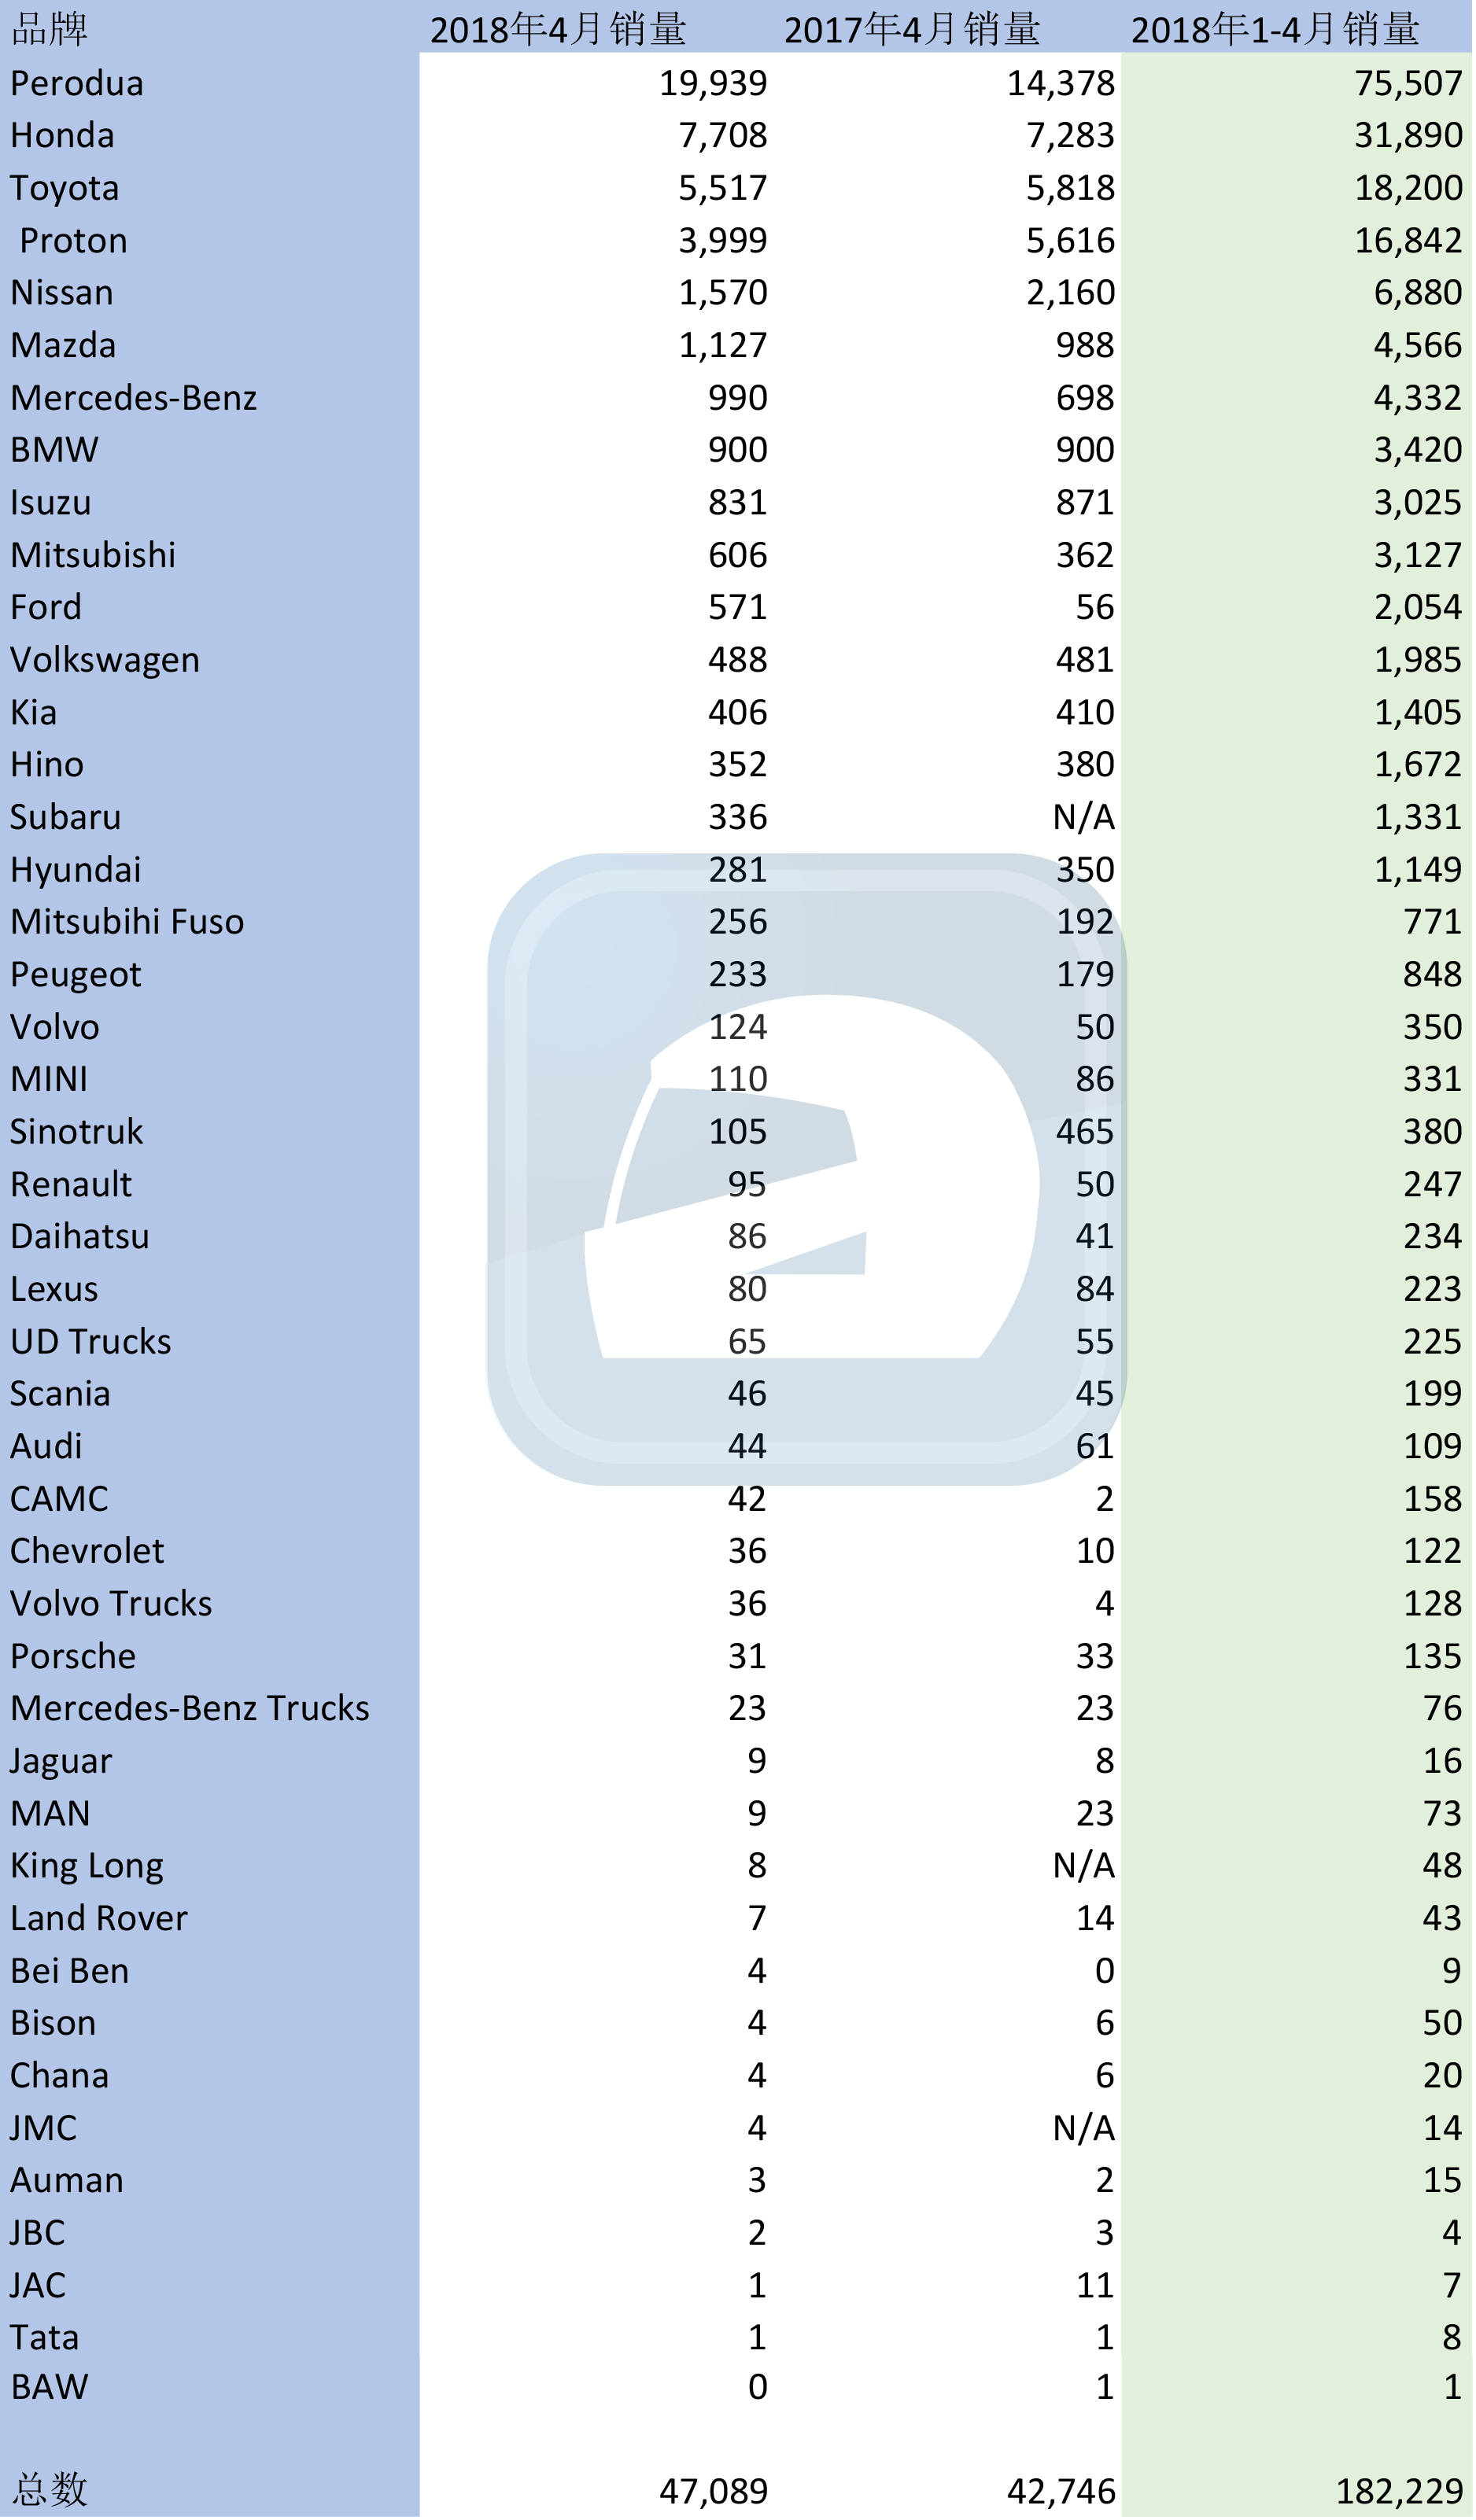 2018年4月大马汽车销量， Perodua 市占率高达42.3%！